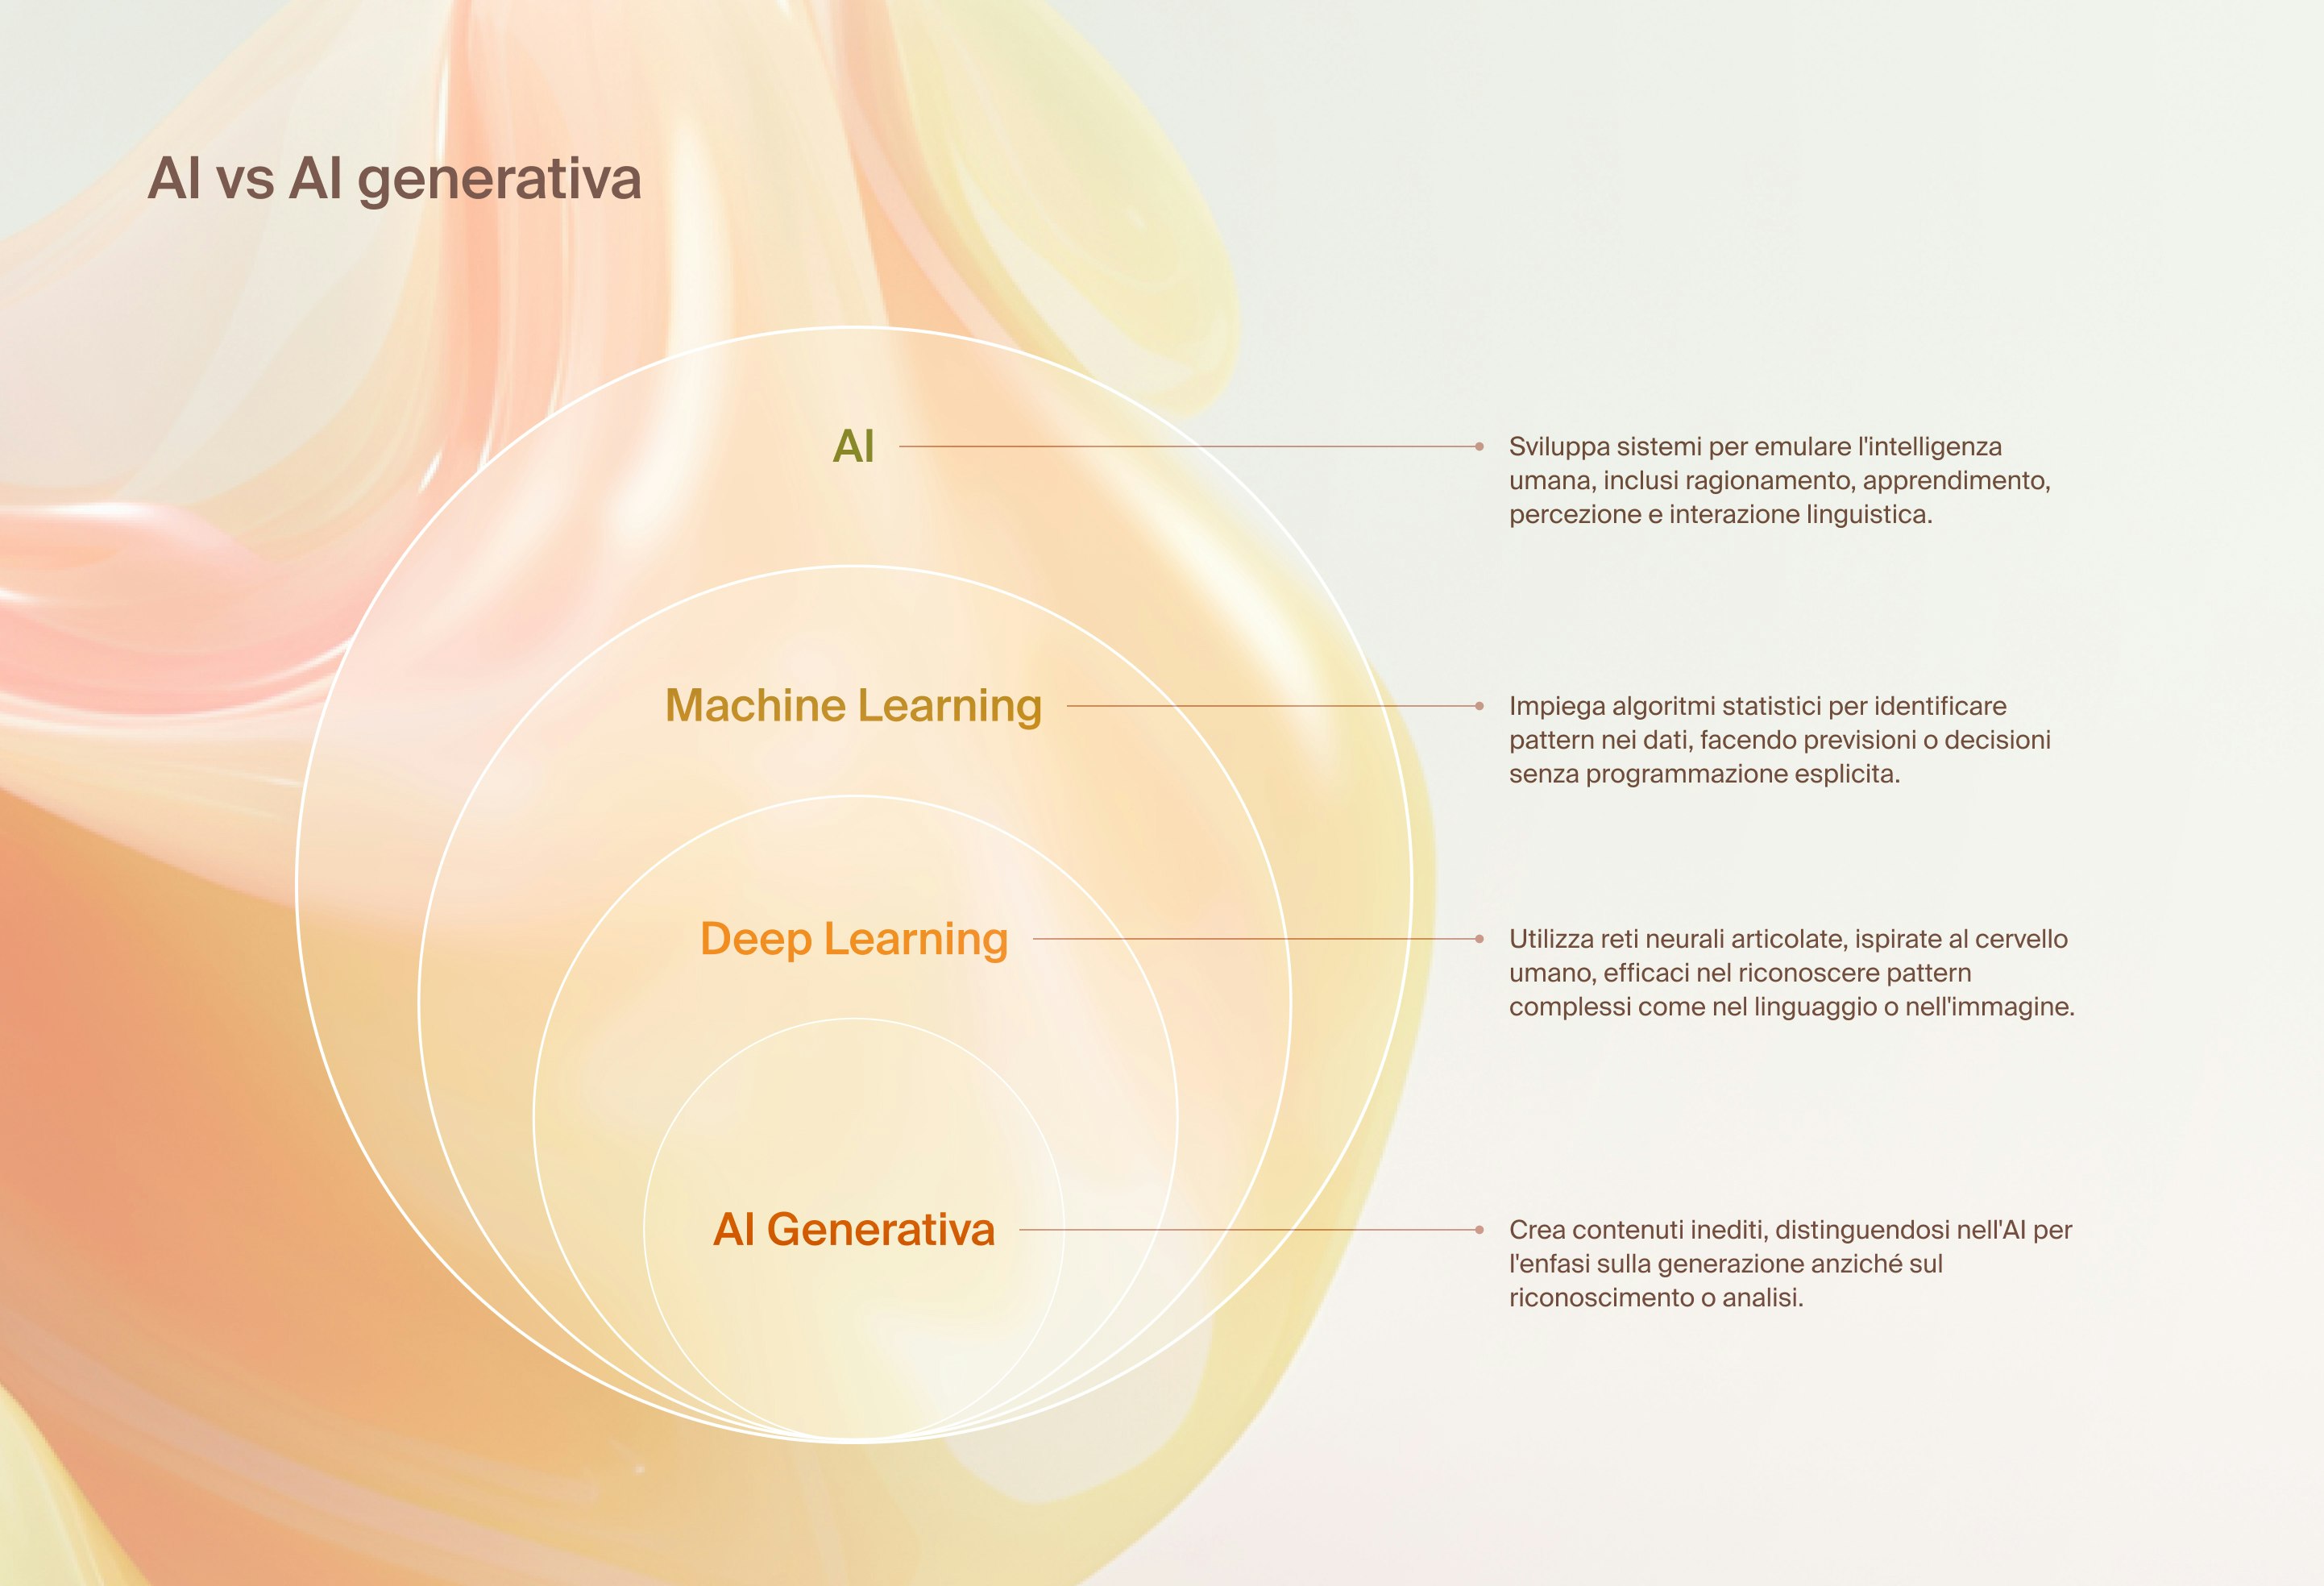 Grafico a cerchi concentrici intitolato “AI vs AI generativa”. Dall’esterno verso l’interno: 1) AI. Sviluppa sistemi per emulare l’intelligenza umana, inclusi ragionamento, apprendimento, percezione e interazione linguistica. 2) Machine Learning. Impiega algoritmi statistici per identificare pattern nei dati, facendo previsioni o decisioni senza programmazione esplicita. 3) Deep Learning. Utilizza reti neurali articolate, ispirate al cervello umano, efficaci nel riconoscere pattern complessi come nel linguaggio o nell’immagine. 4) AI Generativa. Crea contenuti inediti, distinguendosi nell’AI per l’enfasi sulla generazione anziché sul riconoscimento o analisi.